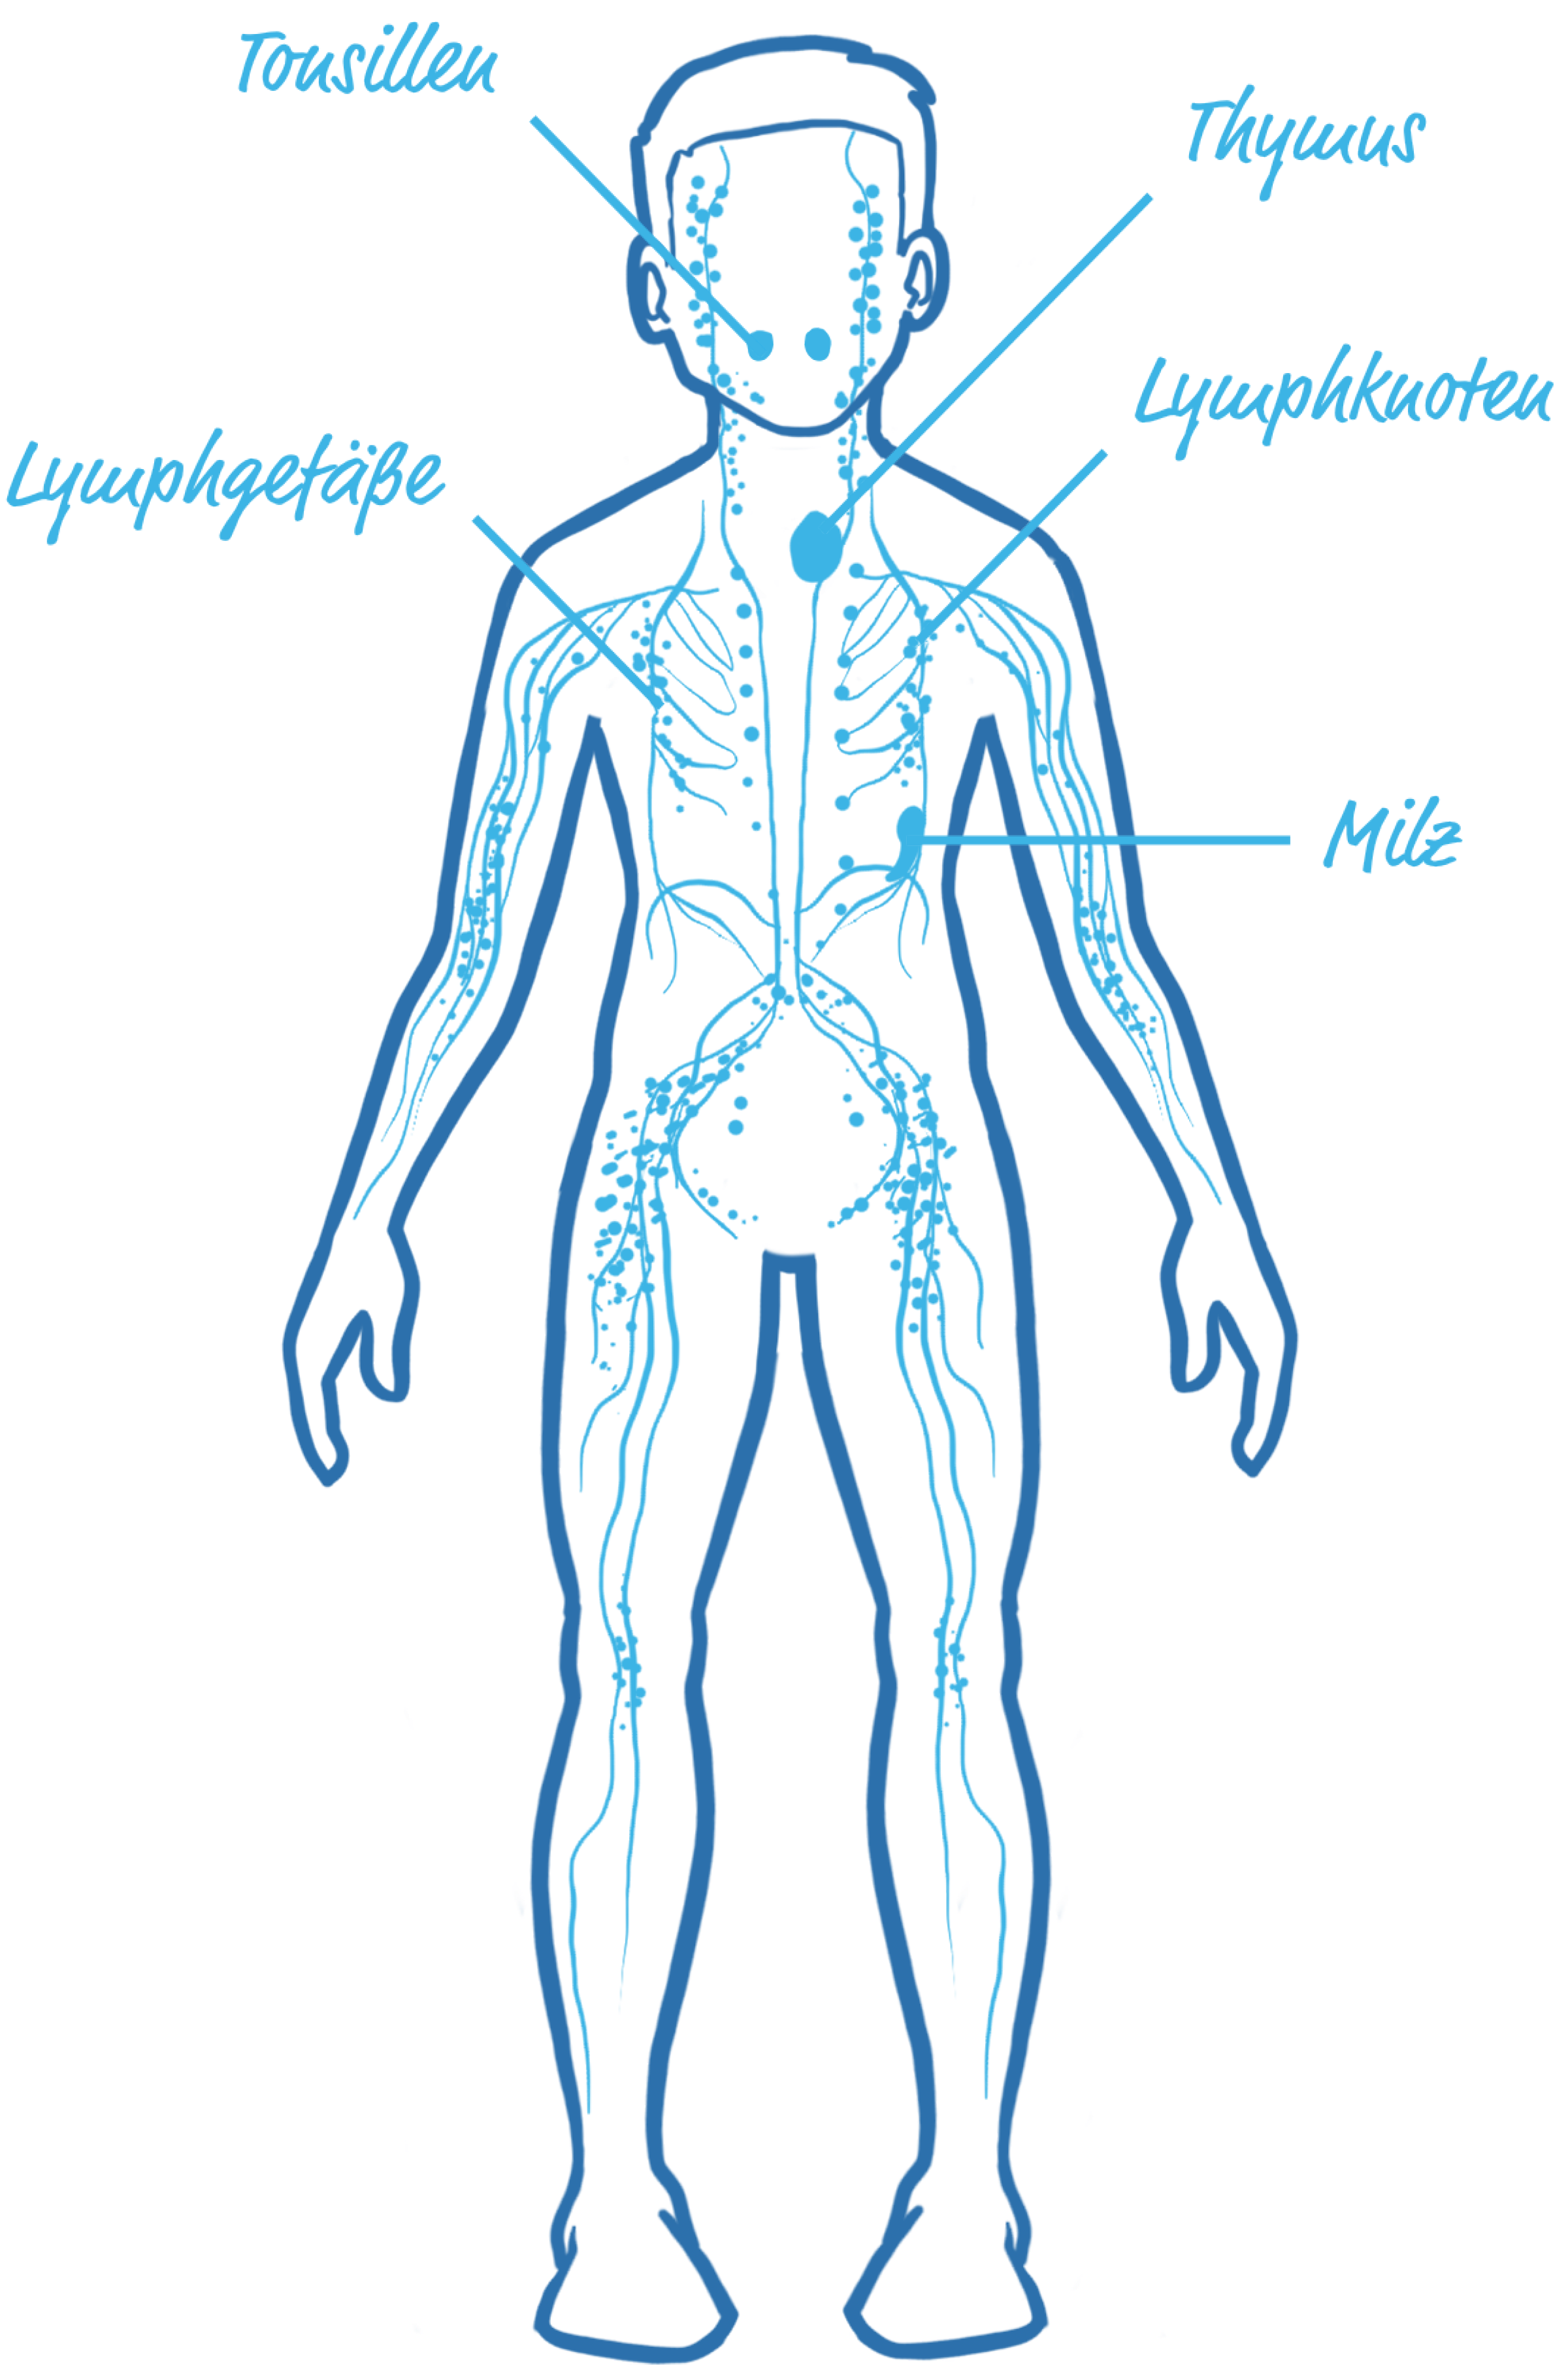 Illustrierter Körper mit dem Lymphsystem